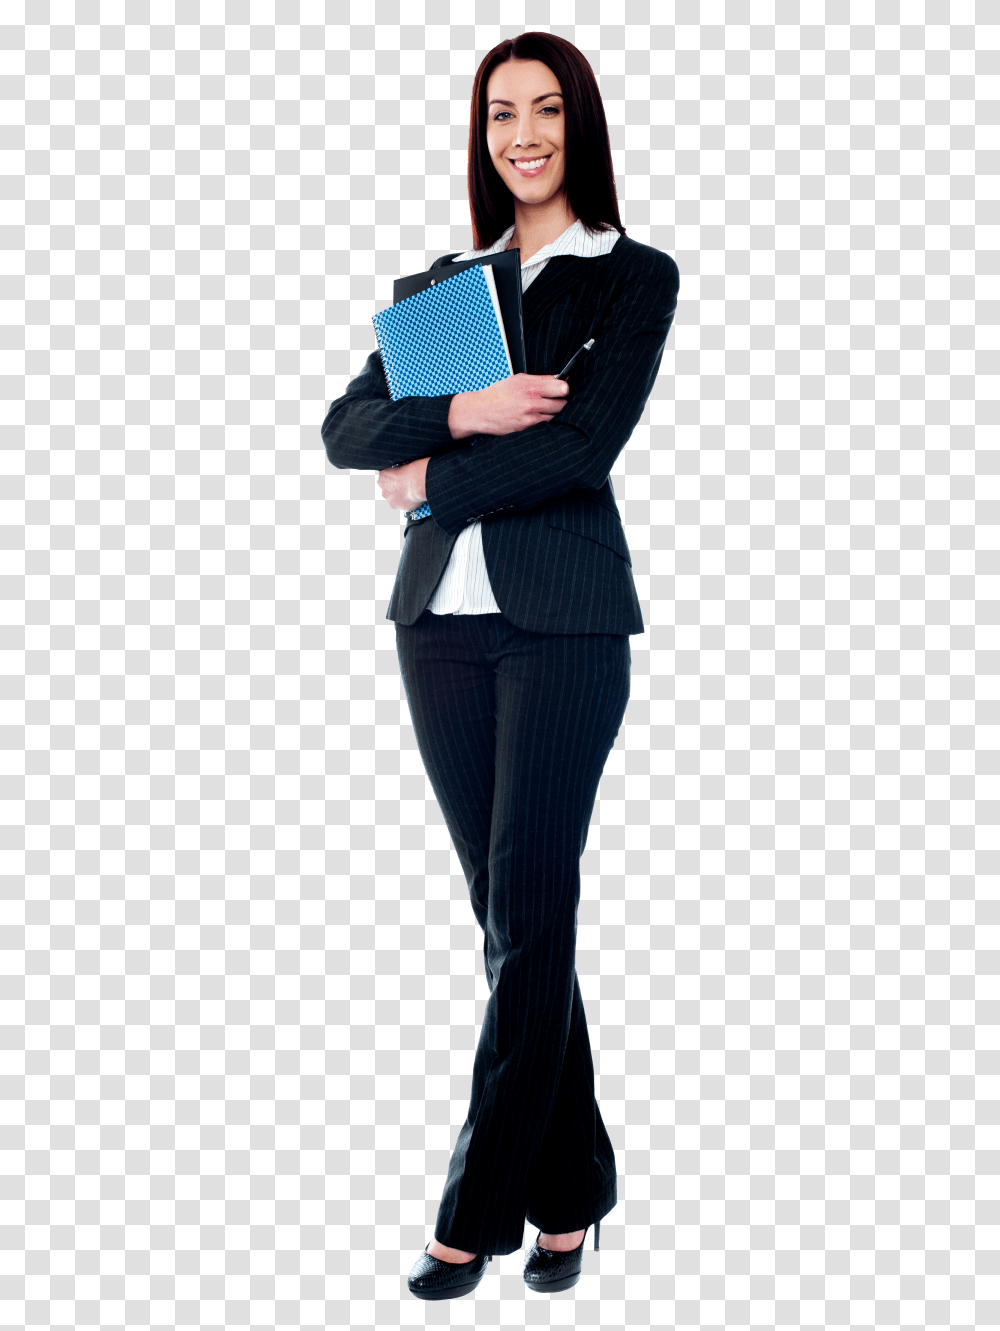 Women Teacher Image Teacher, Suit, Overcoat, Person Transparent Png